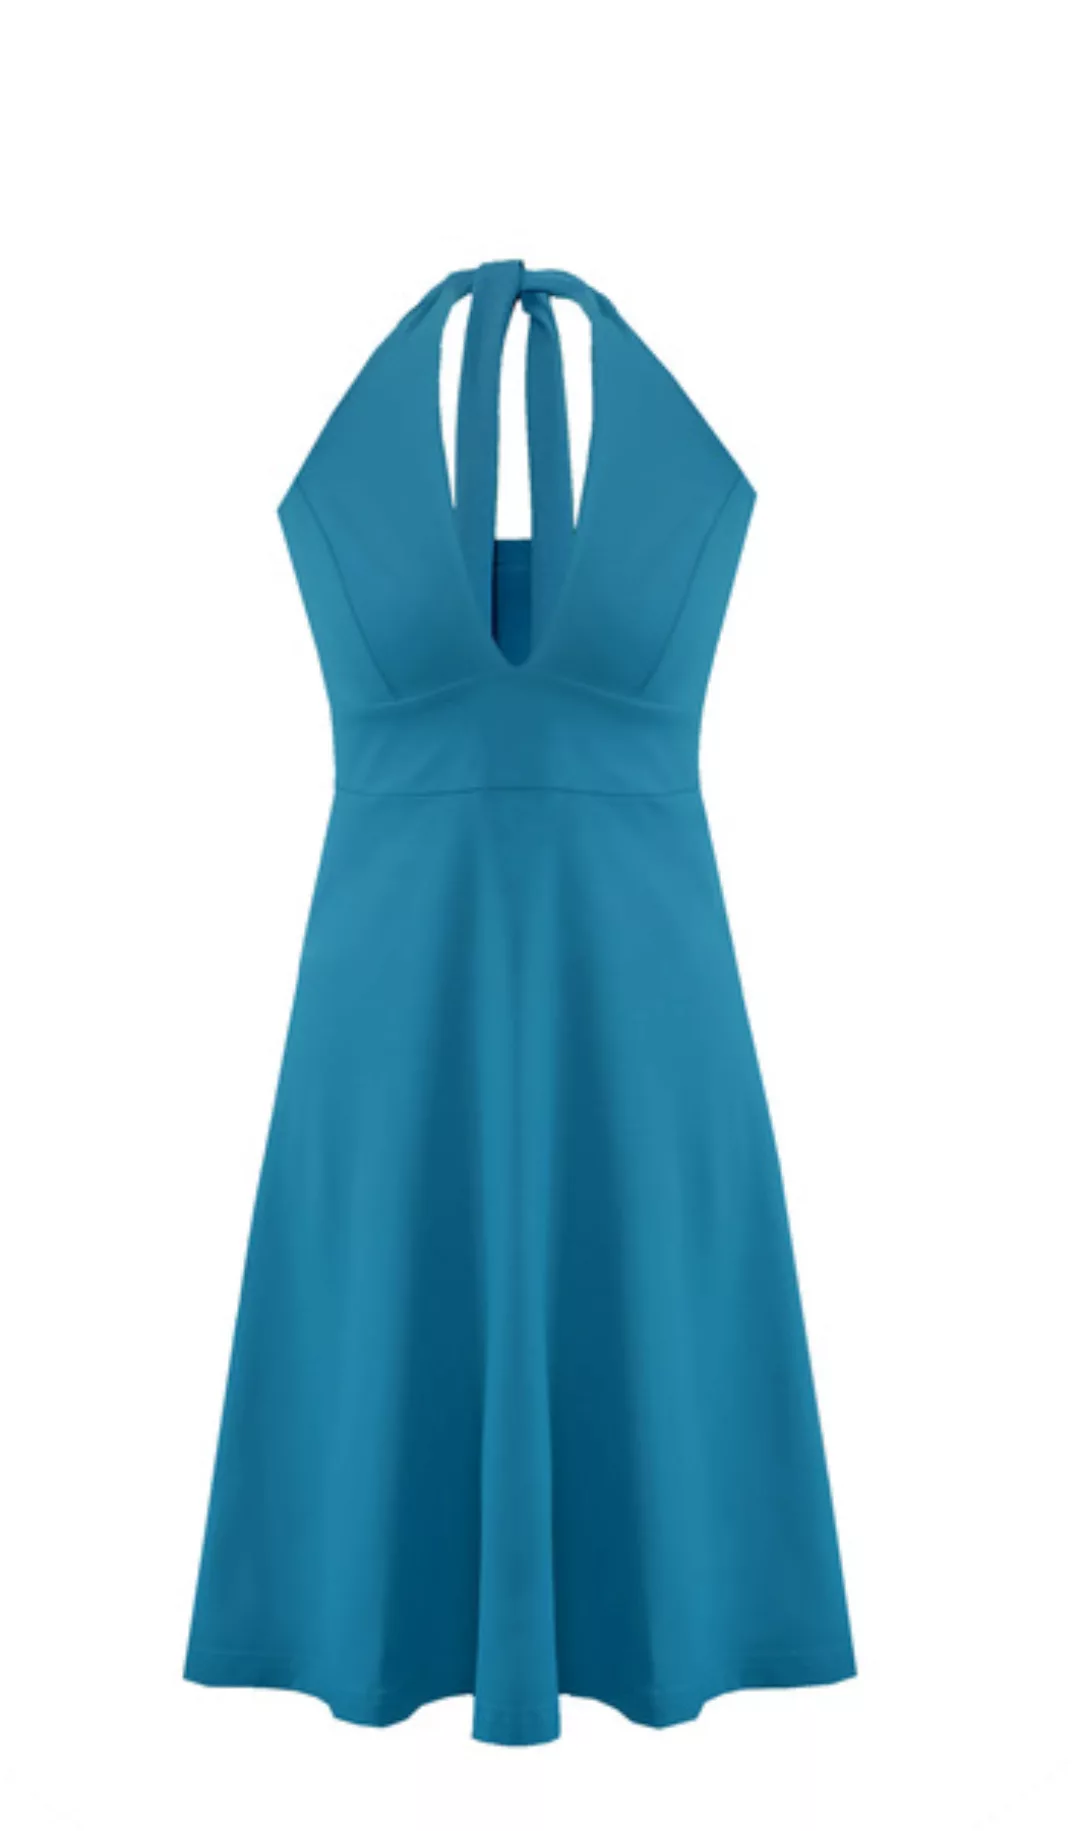 Neckholder Kleid Marilyn Stil günstig online kaufen